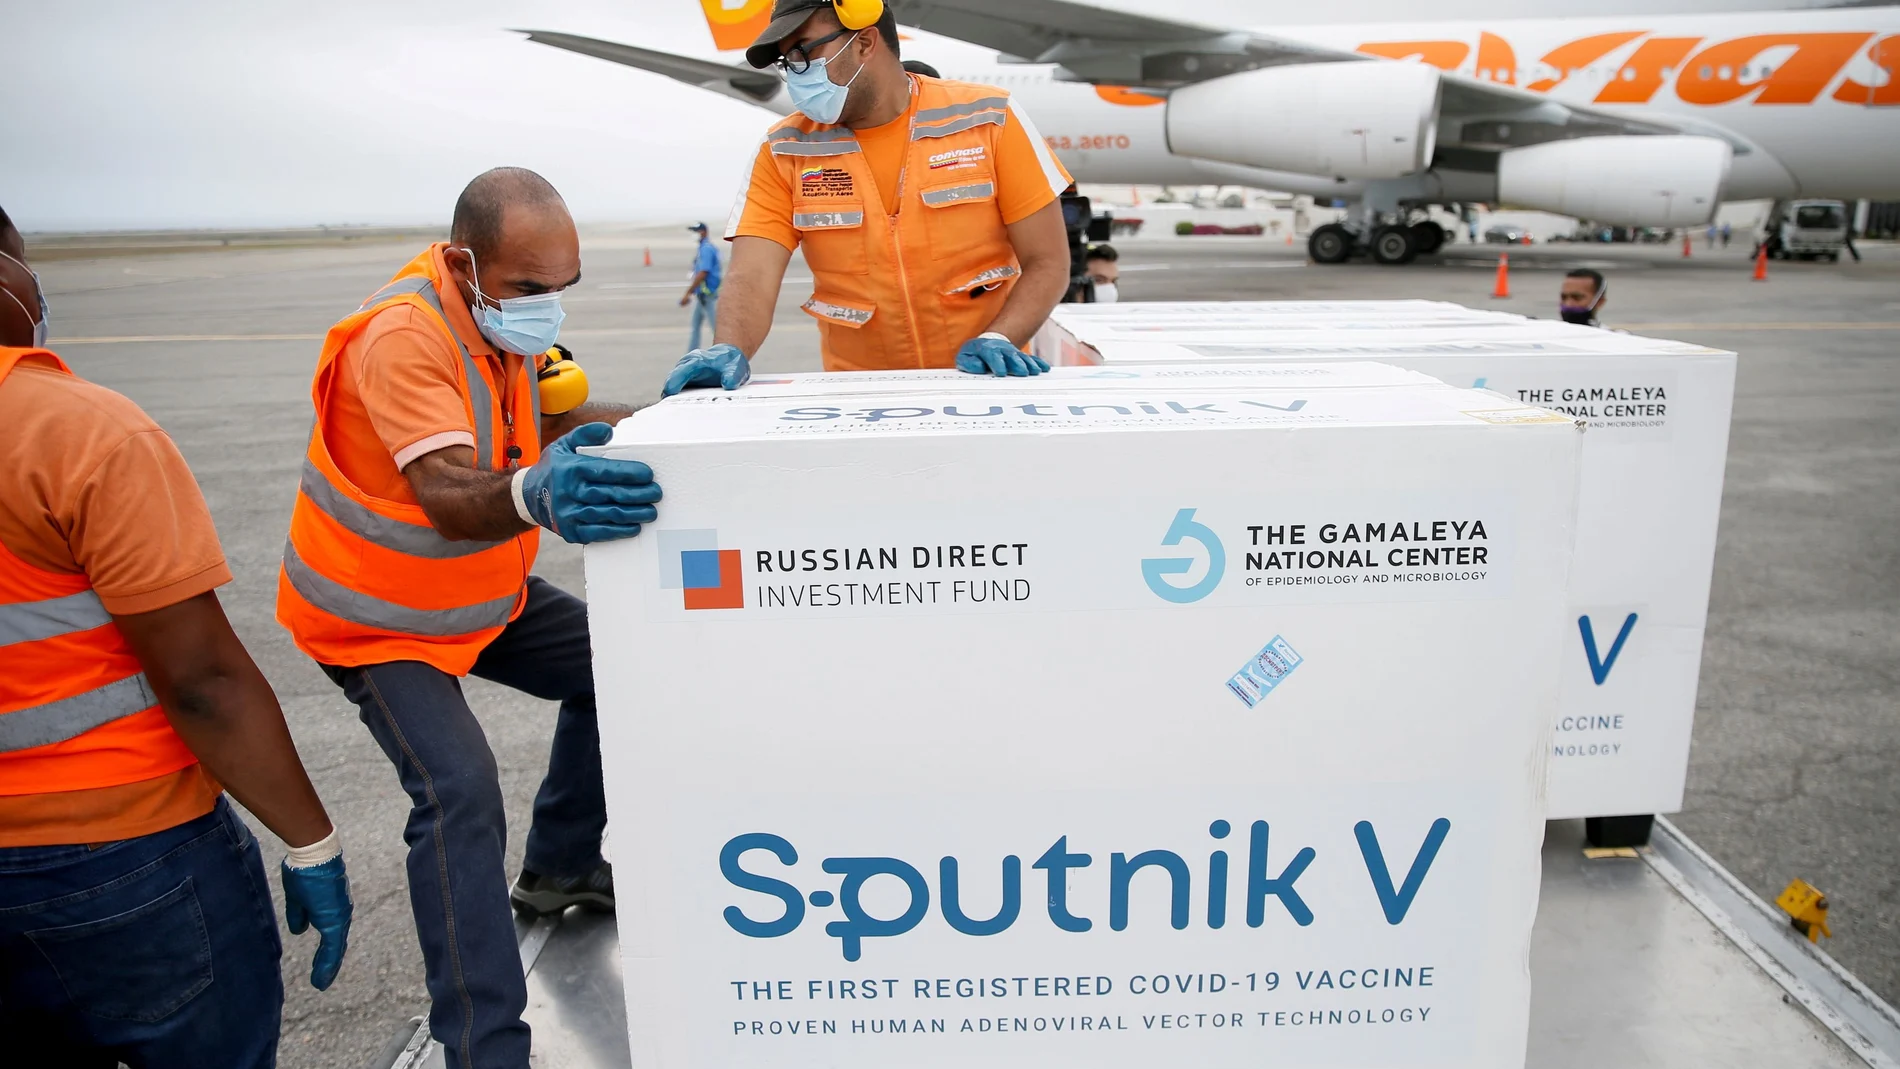 Trabajadores transportando las cajas con las dosis de Sputnik